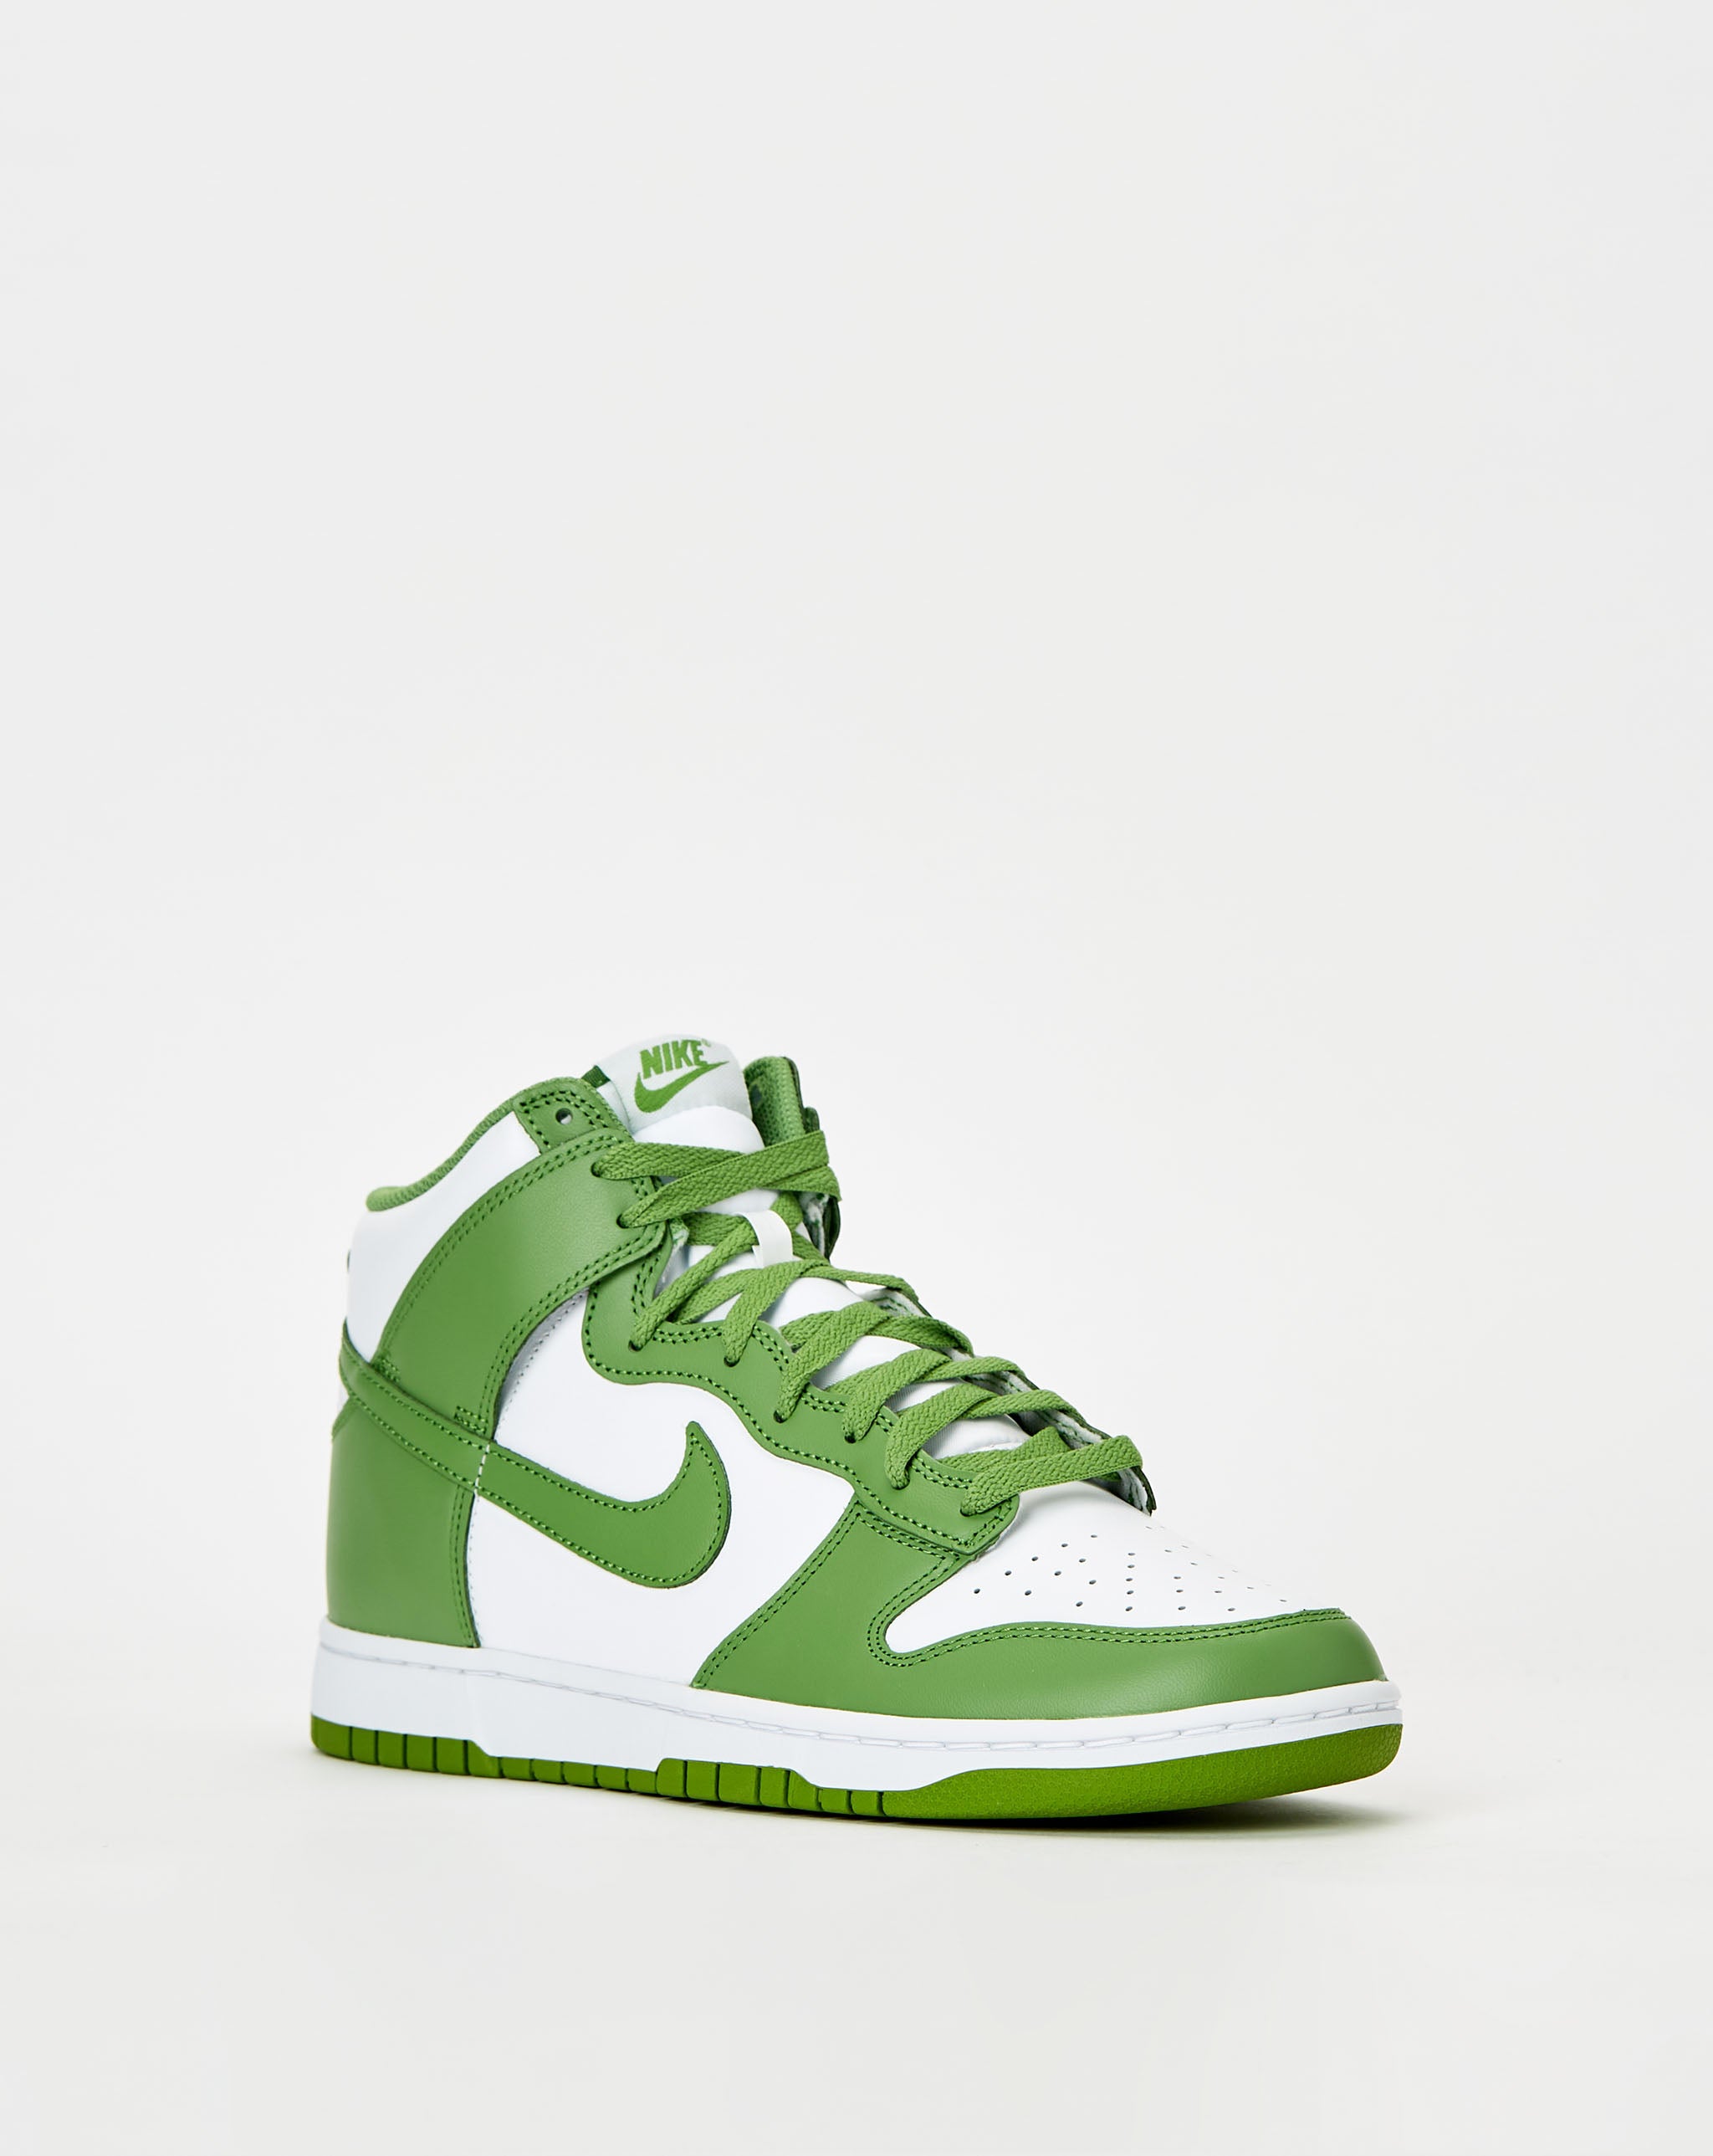 Nike Dunk High Retro 'Chlorophyll'  - Cheap Urlfreeze Jordan outlet